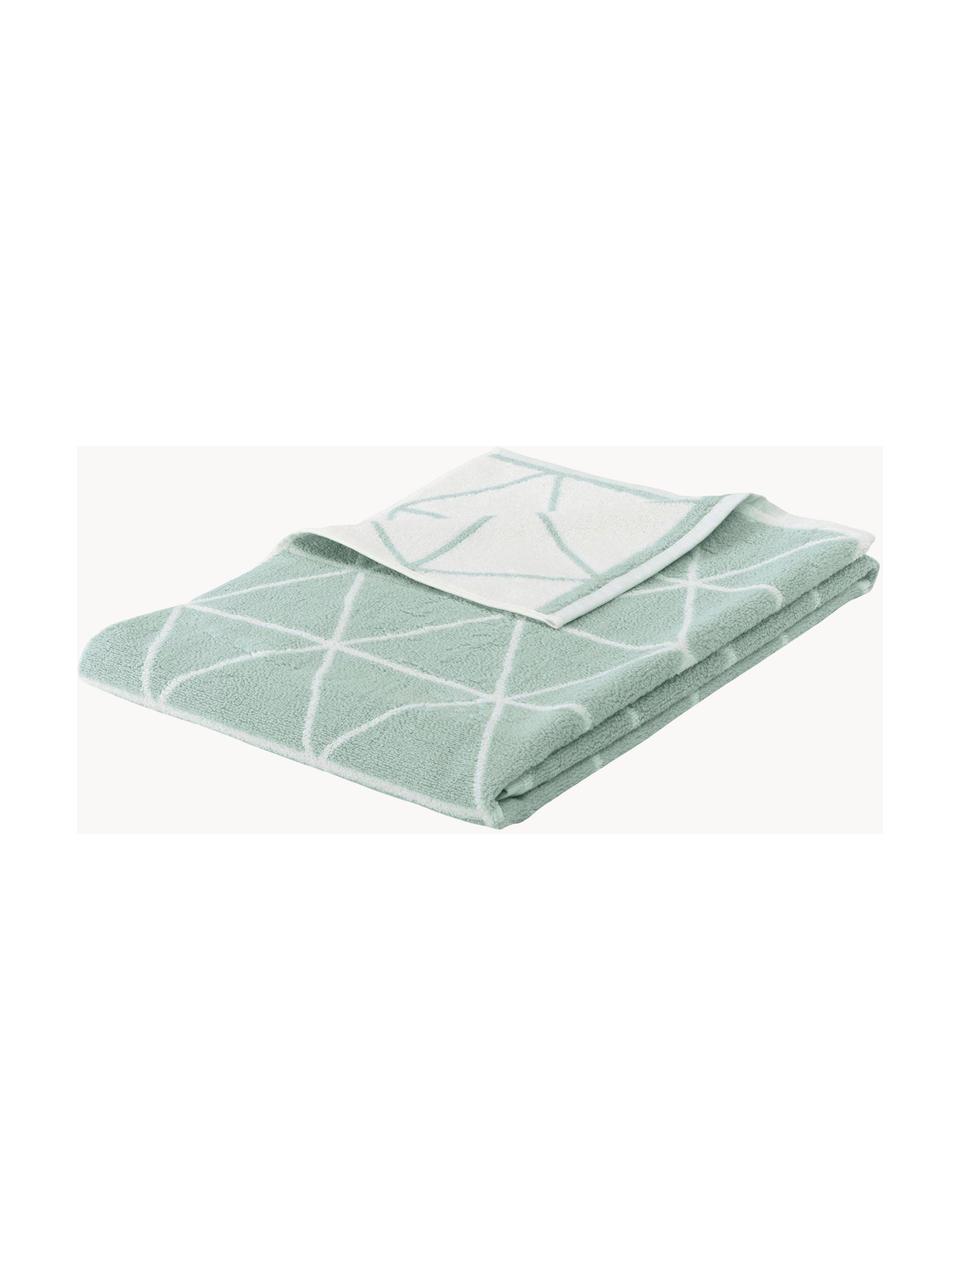 Oboustranné ručníky s grafickým vzorem Elina, 2 ks, 100% bavlna, střední gramáž 550 g/m², Mátově zelená, krémově bílá, Ručník pro hosty, Š 30, D 50 cm, 2 ks